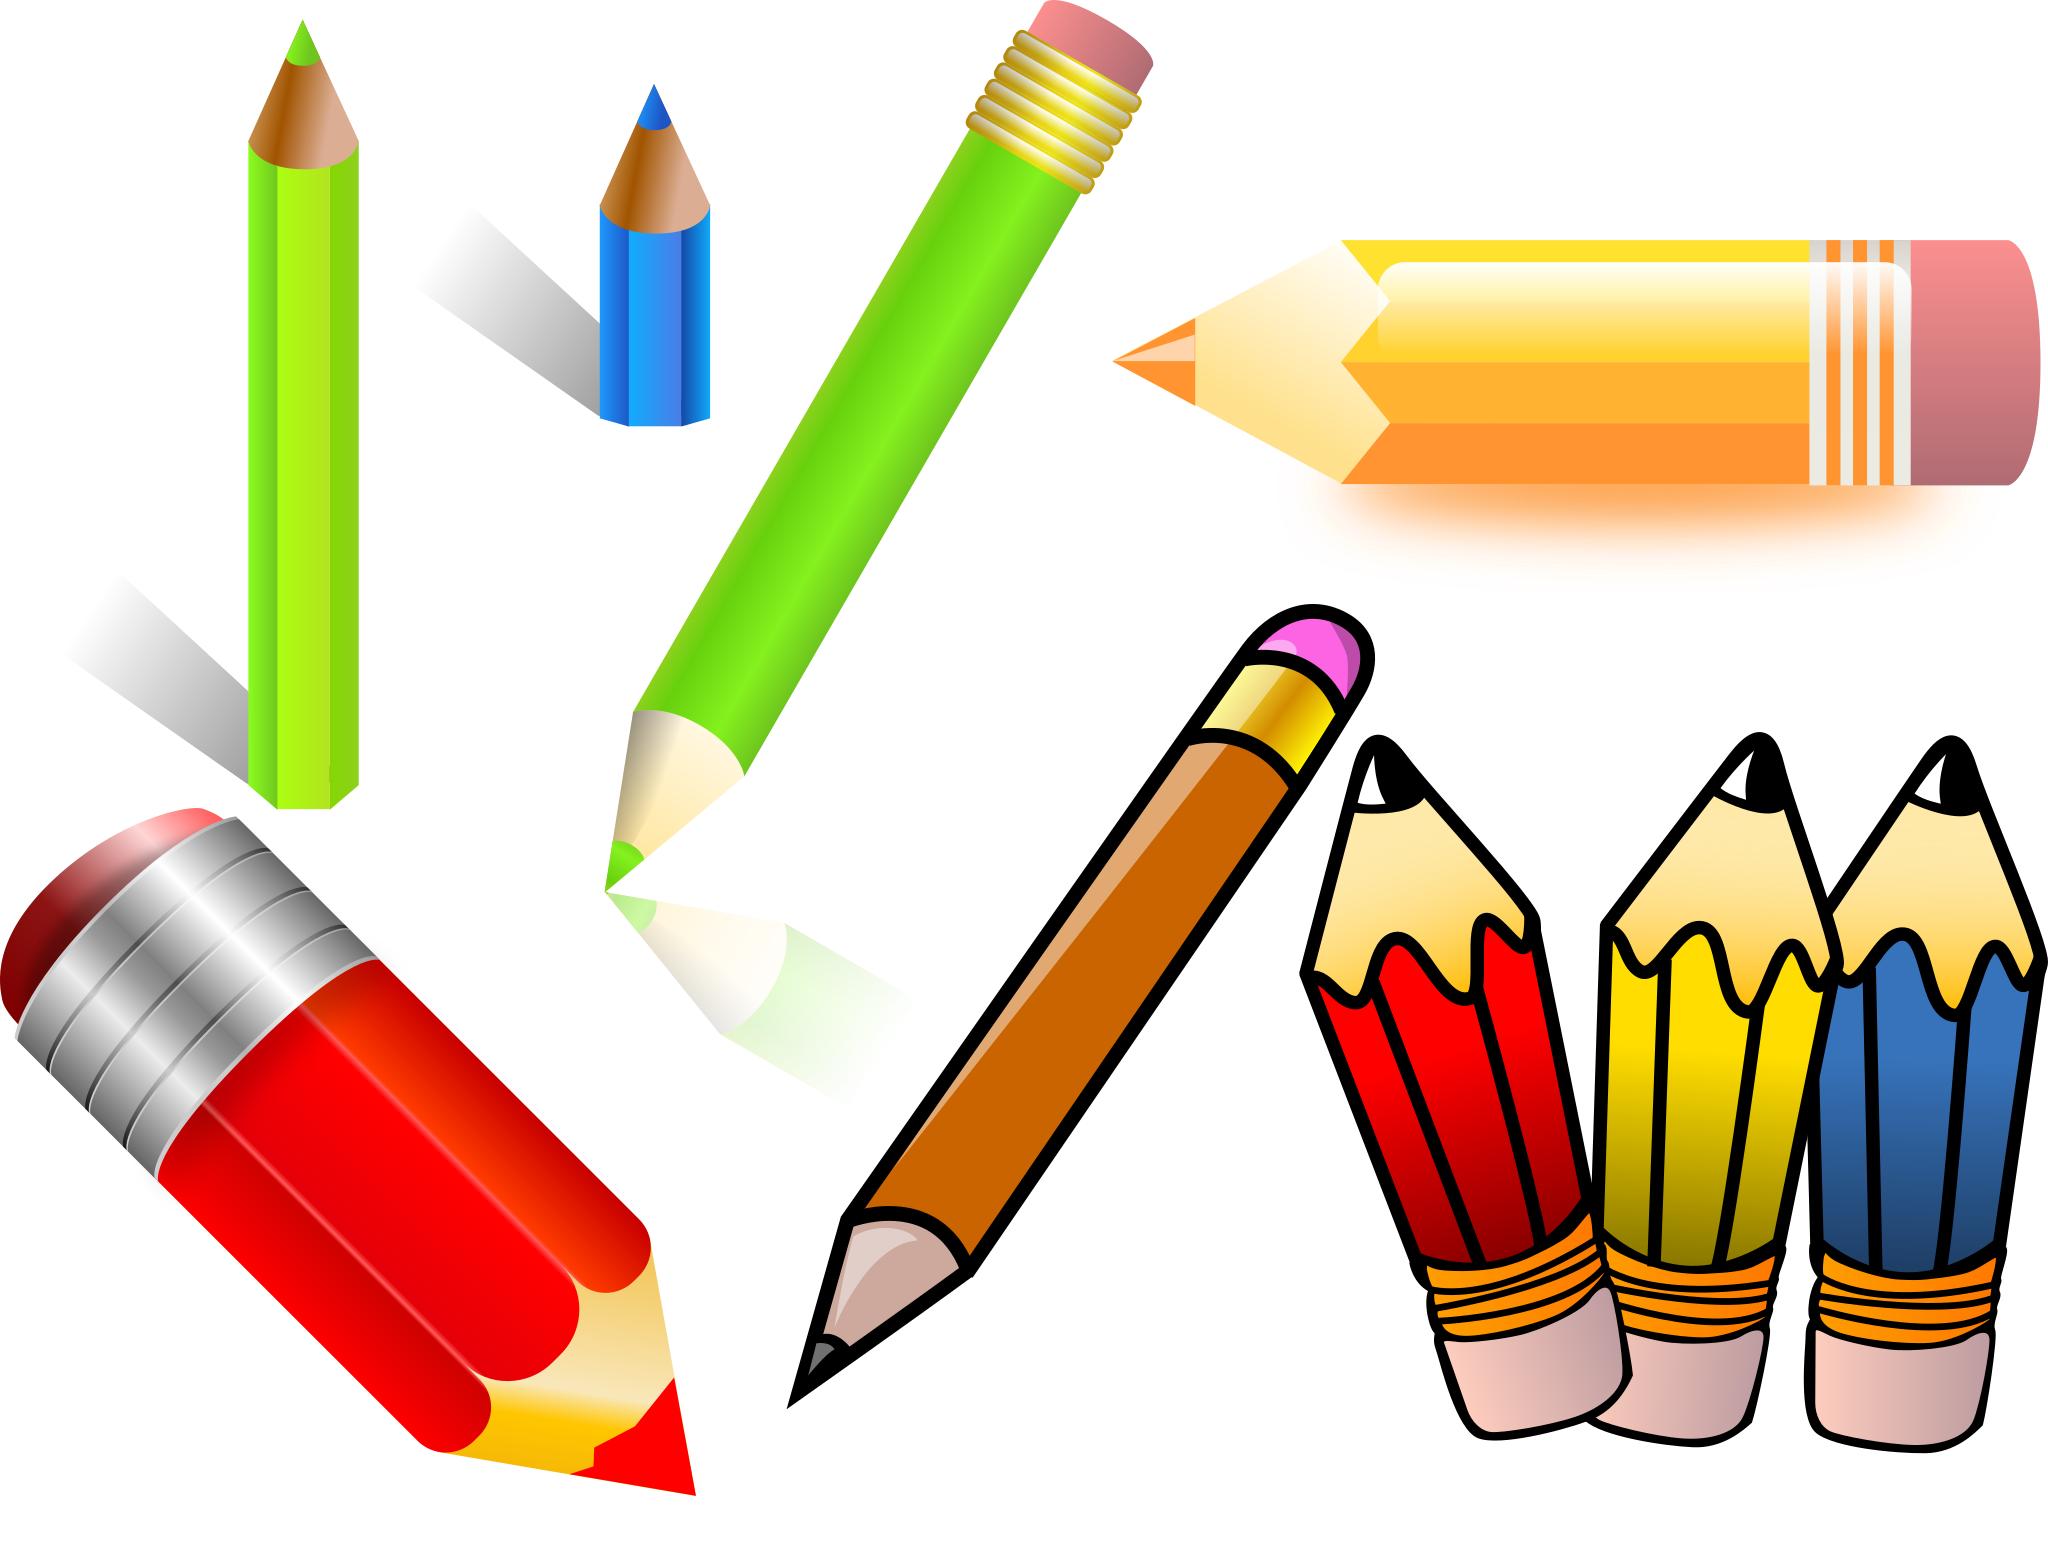 Pencil download. Карандаш мультяшный. Карандаш для детей. Цветные карандаши на прозрачном фоне. Цветные карандаши на белом фоне.